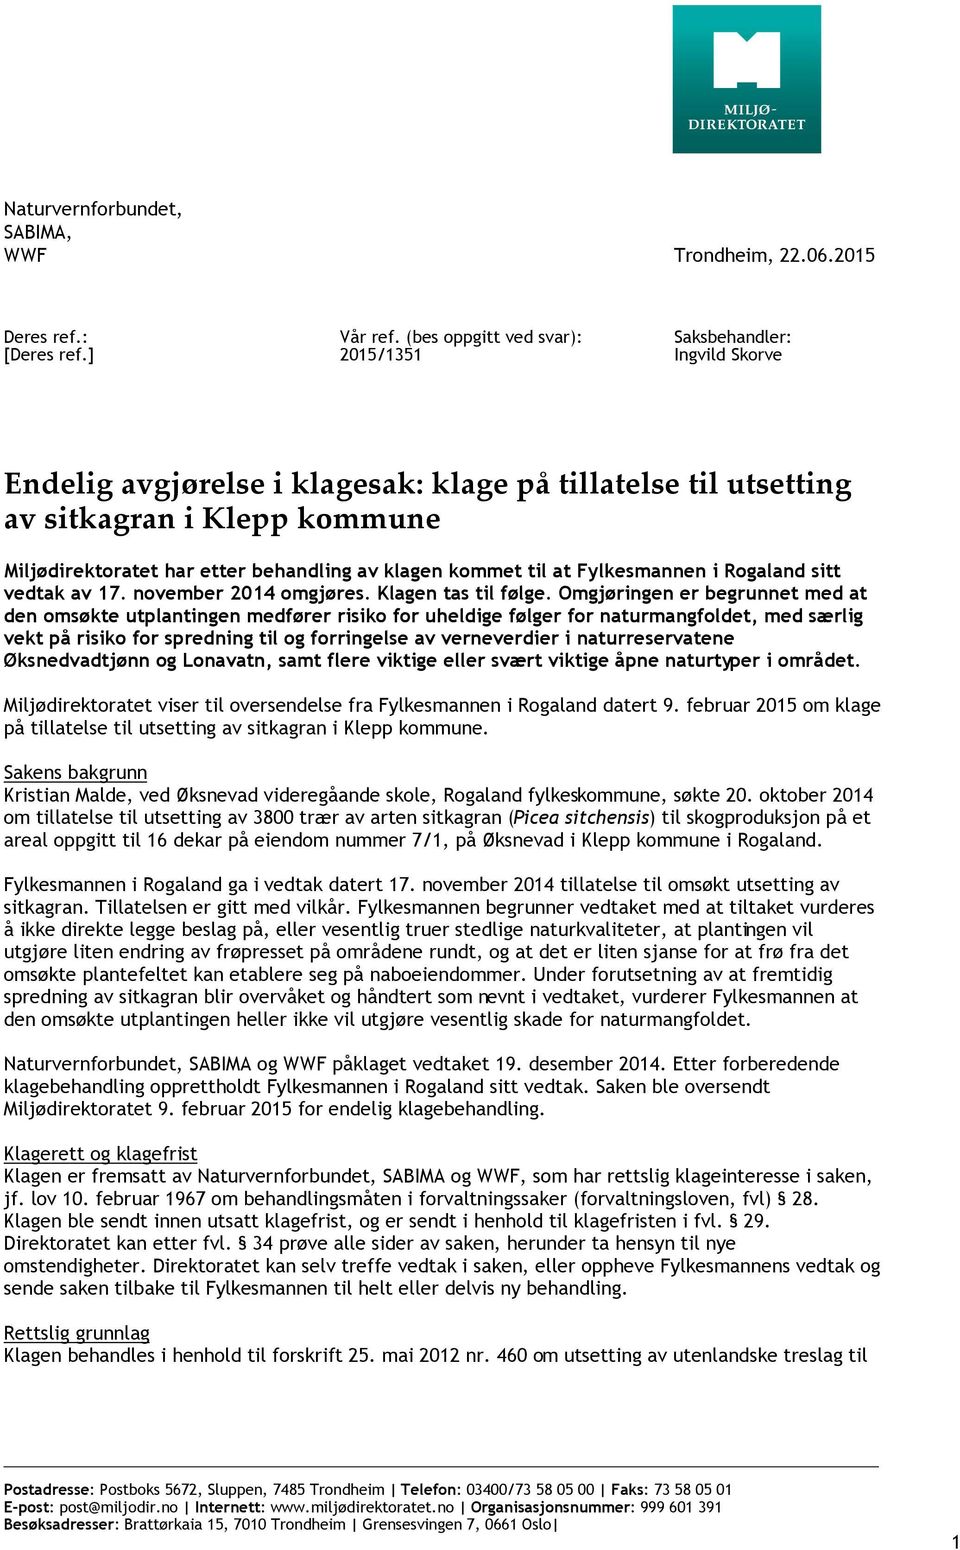 klagen kommet til at Fylkesmannen i Rogaland sitt vedtak av 17. november 2014 omgjøres. Klagen tas til følge.